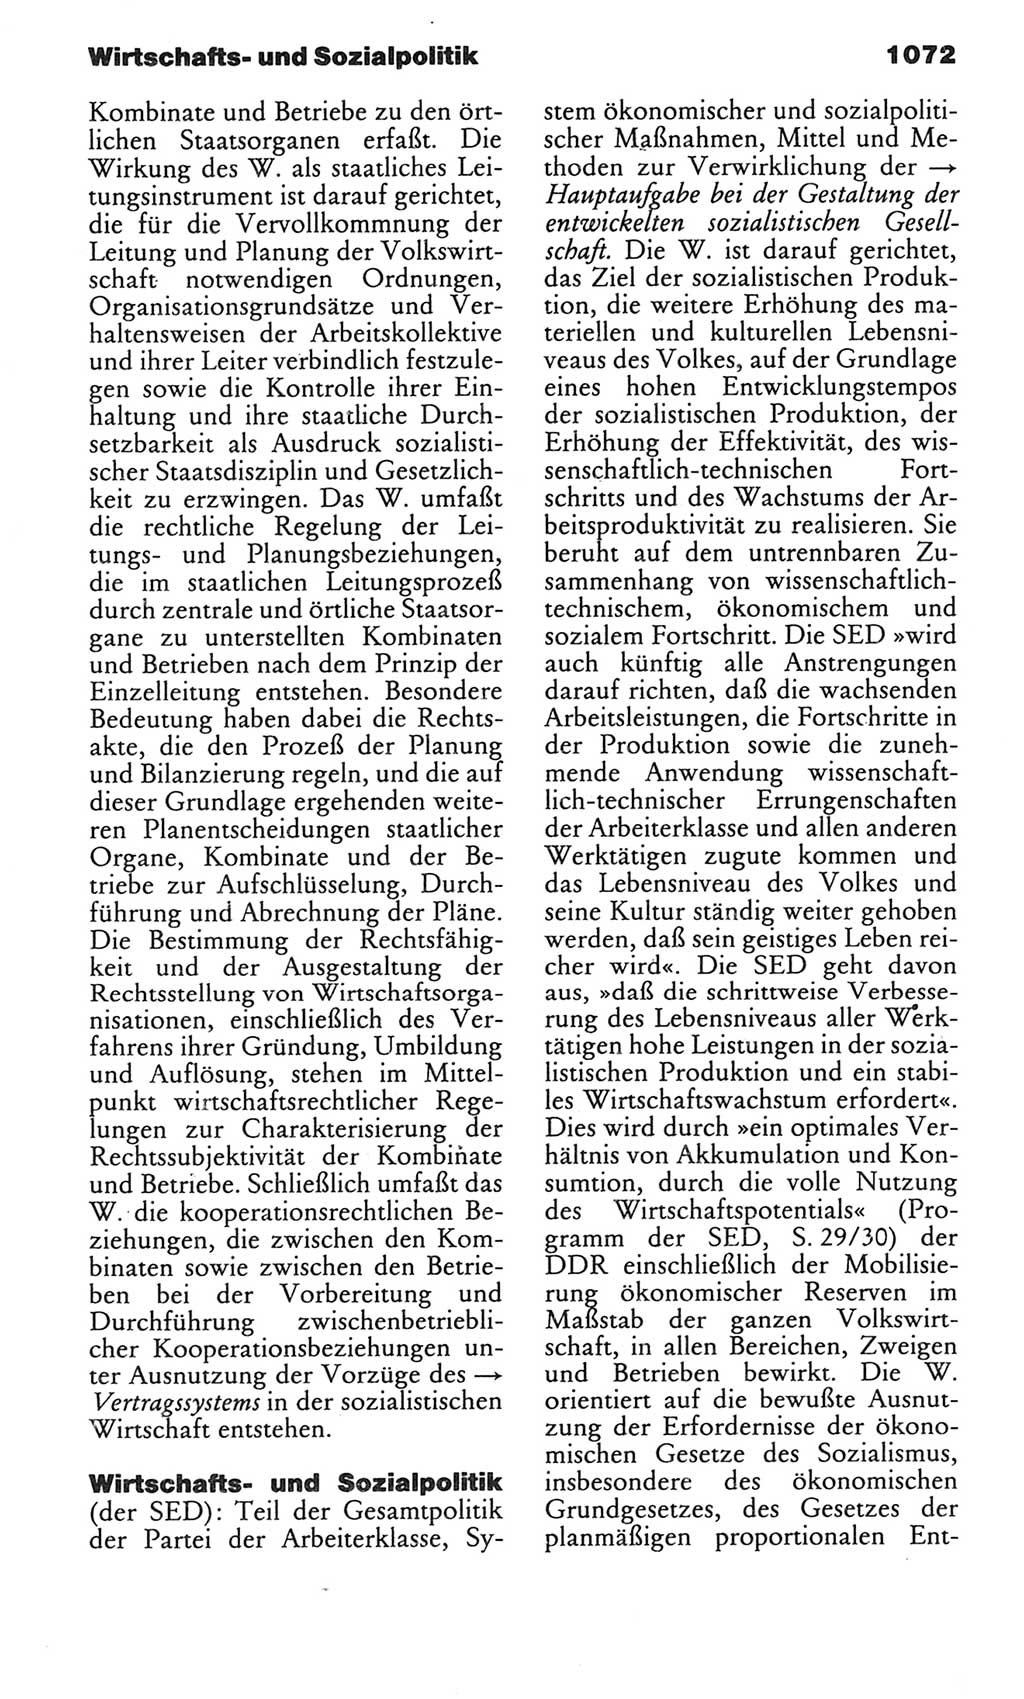 Kleines politisches Wörterbuch [Deutsche Demokratische Republik (DDR)] 1983, Seite 1072 (Kl. pol. Wb. DDR 1983, S. 1072)